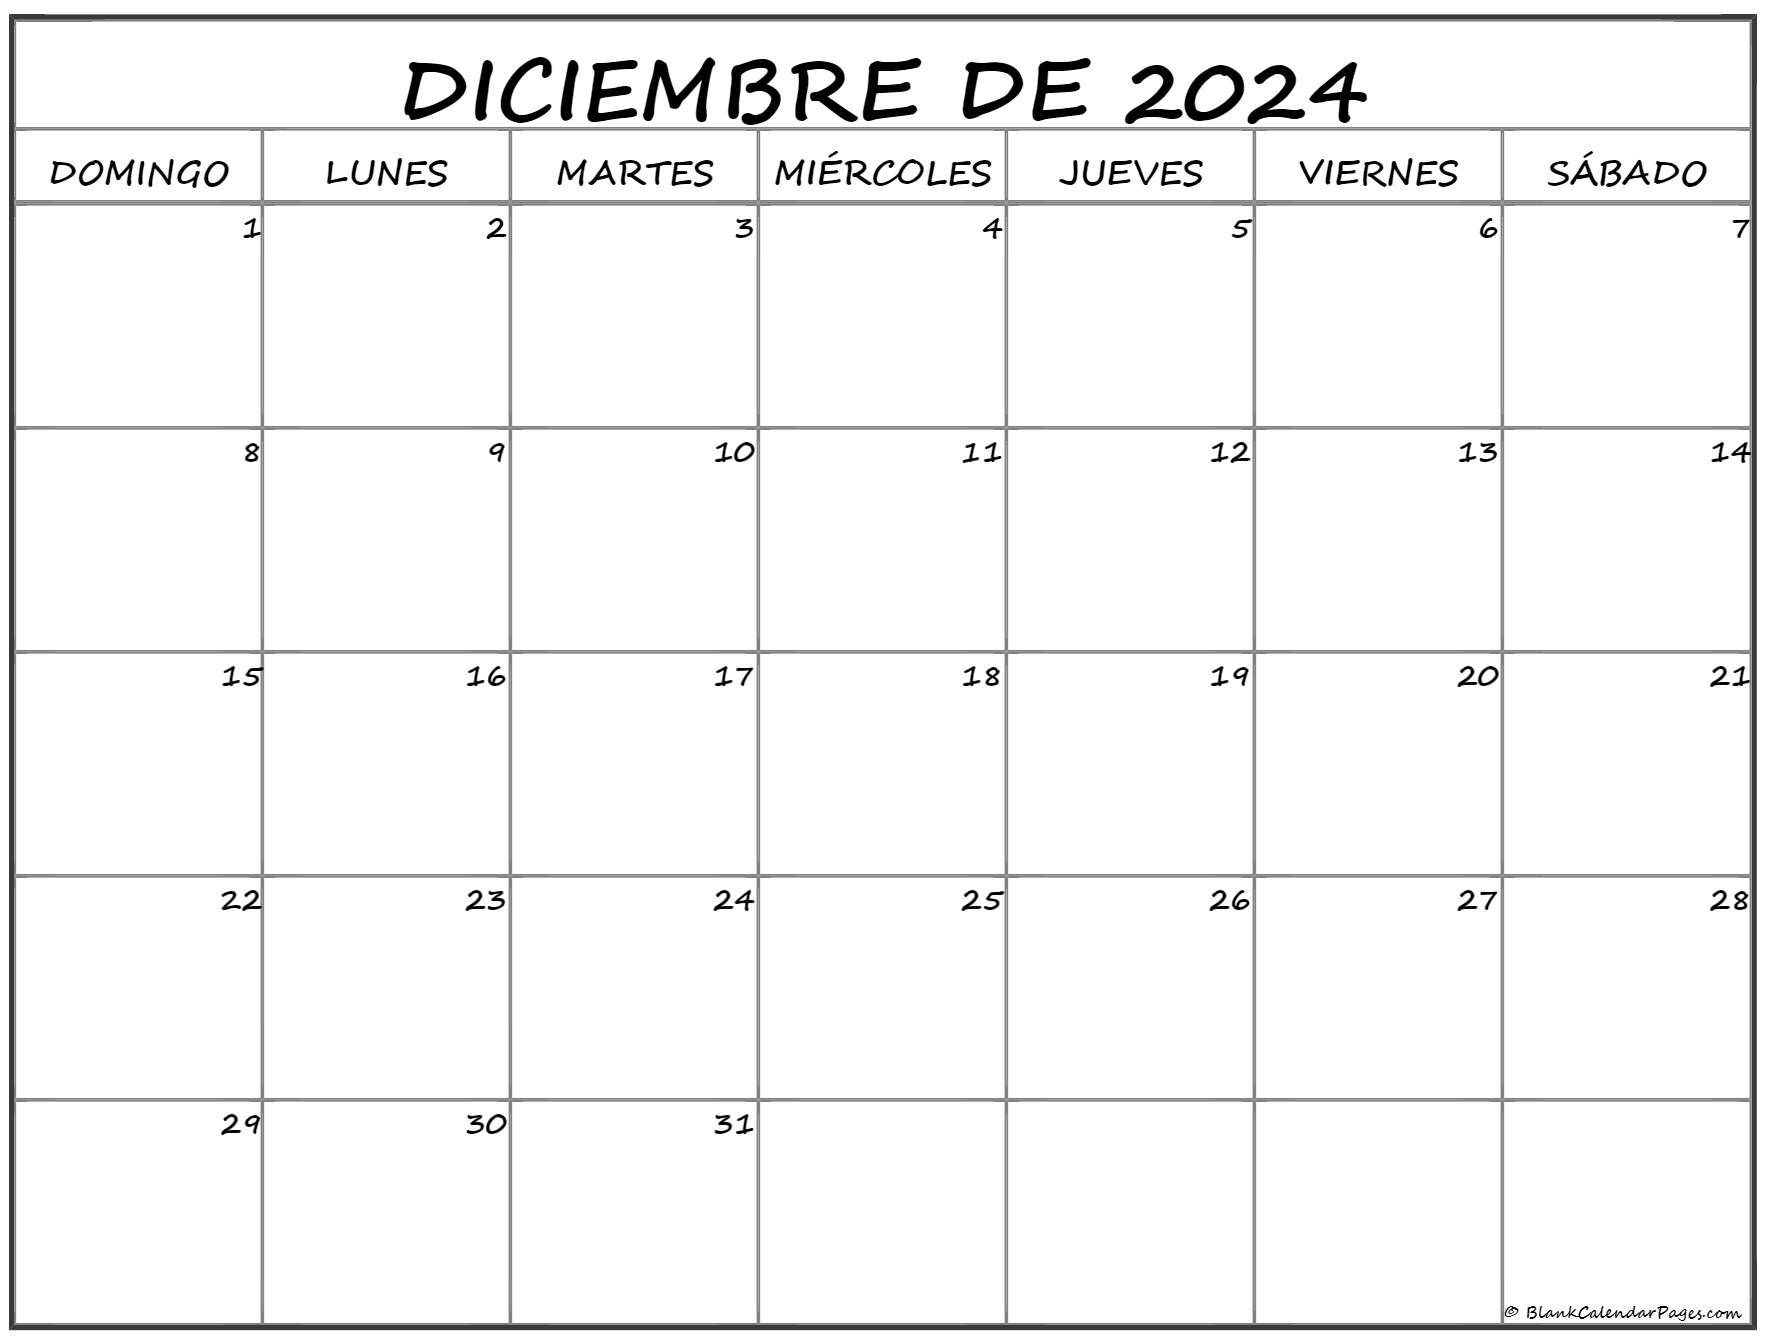 diciembre de 2024 calendario gratis Calendario diciembre